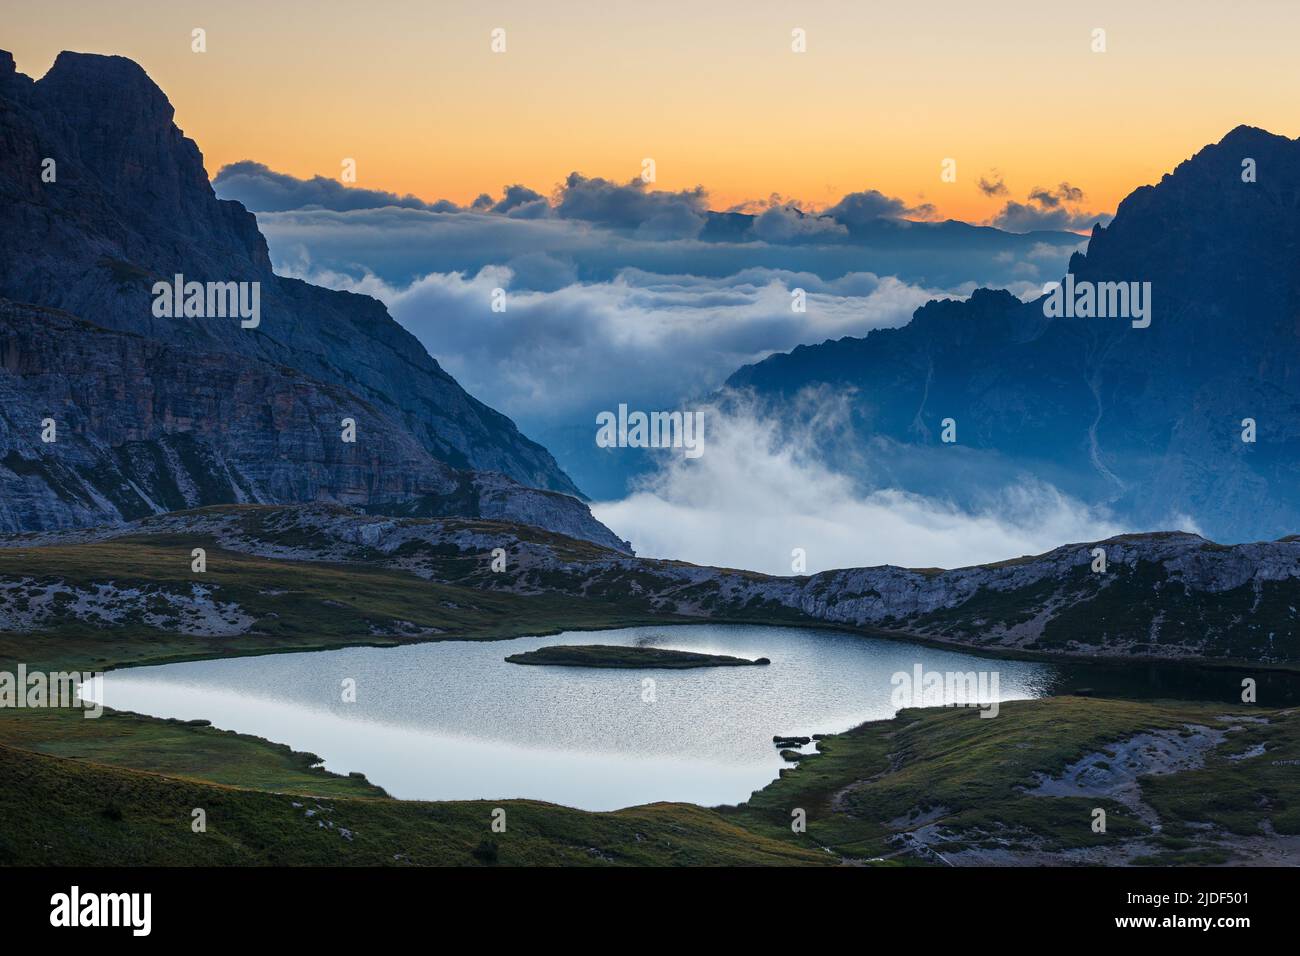 Evocador amanecer en Laghi dei Piani (lagos Piani) en los Dolomitas Sexten. Marea de nubes sobre valles. Picos montañosos. Alpes italianos. Europa. Foto de stock